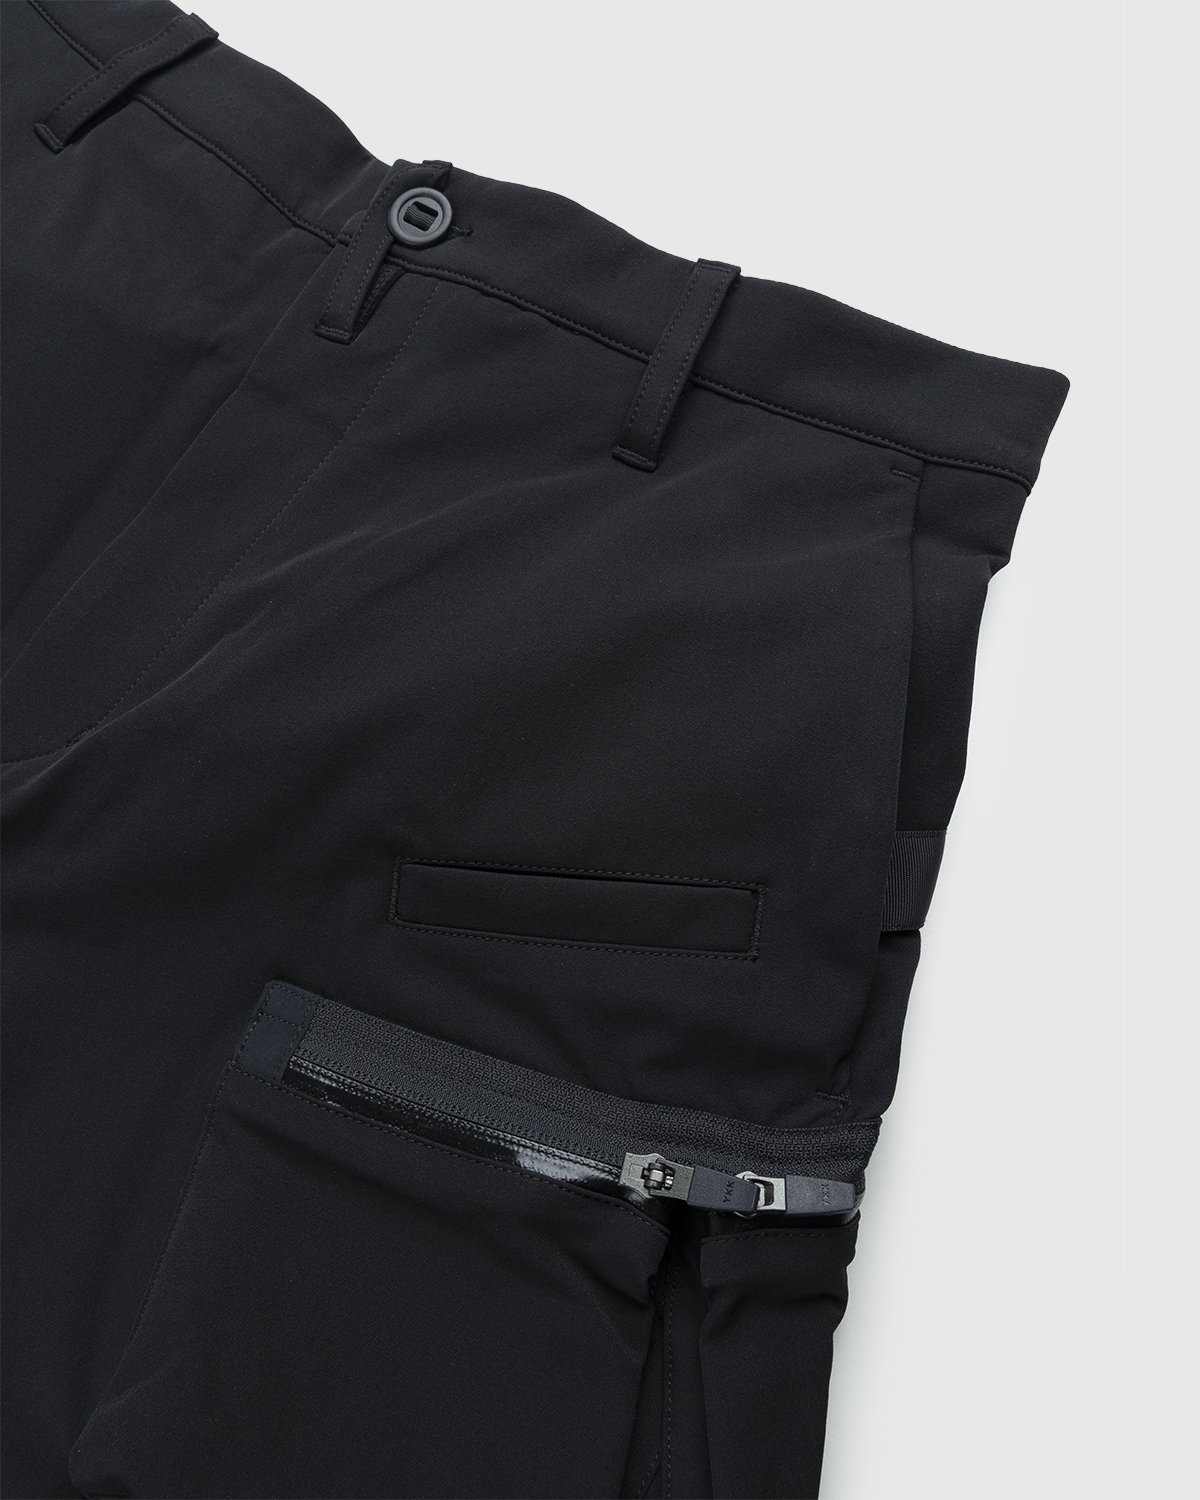 ACRONYM - P41-DS Pant Black - Clothing - Black - Image 5